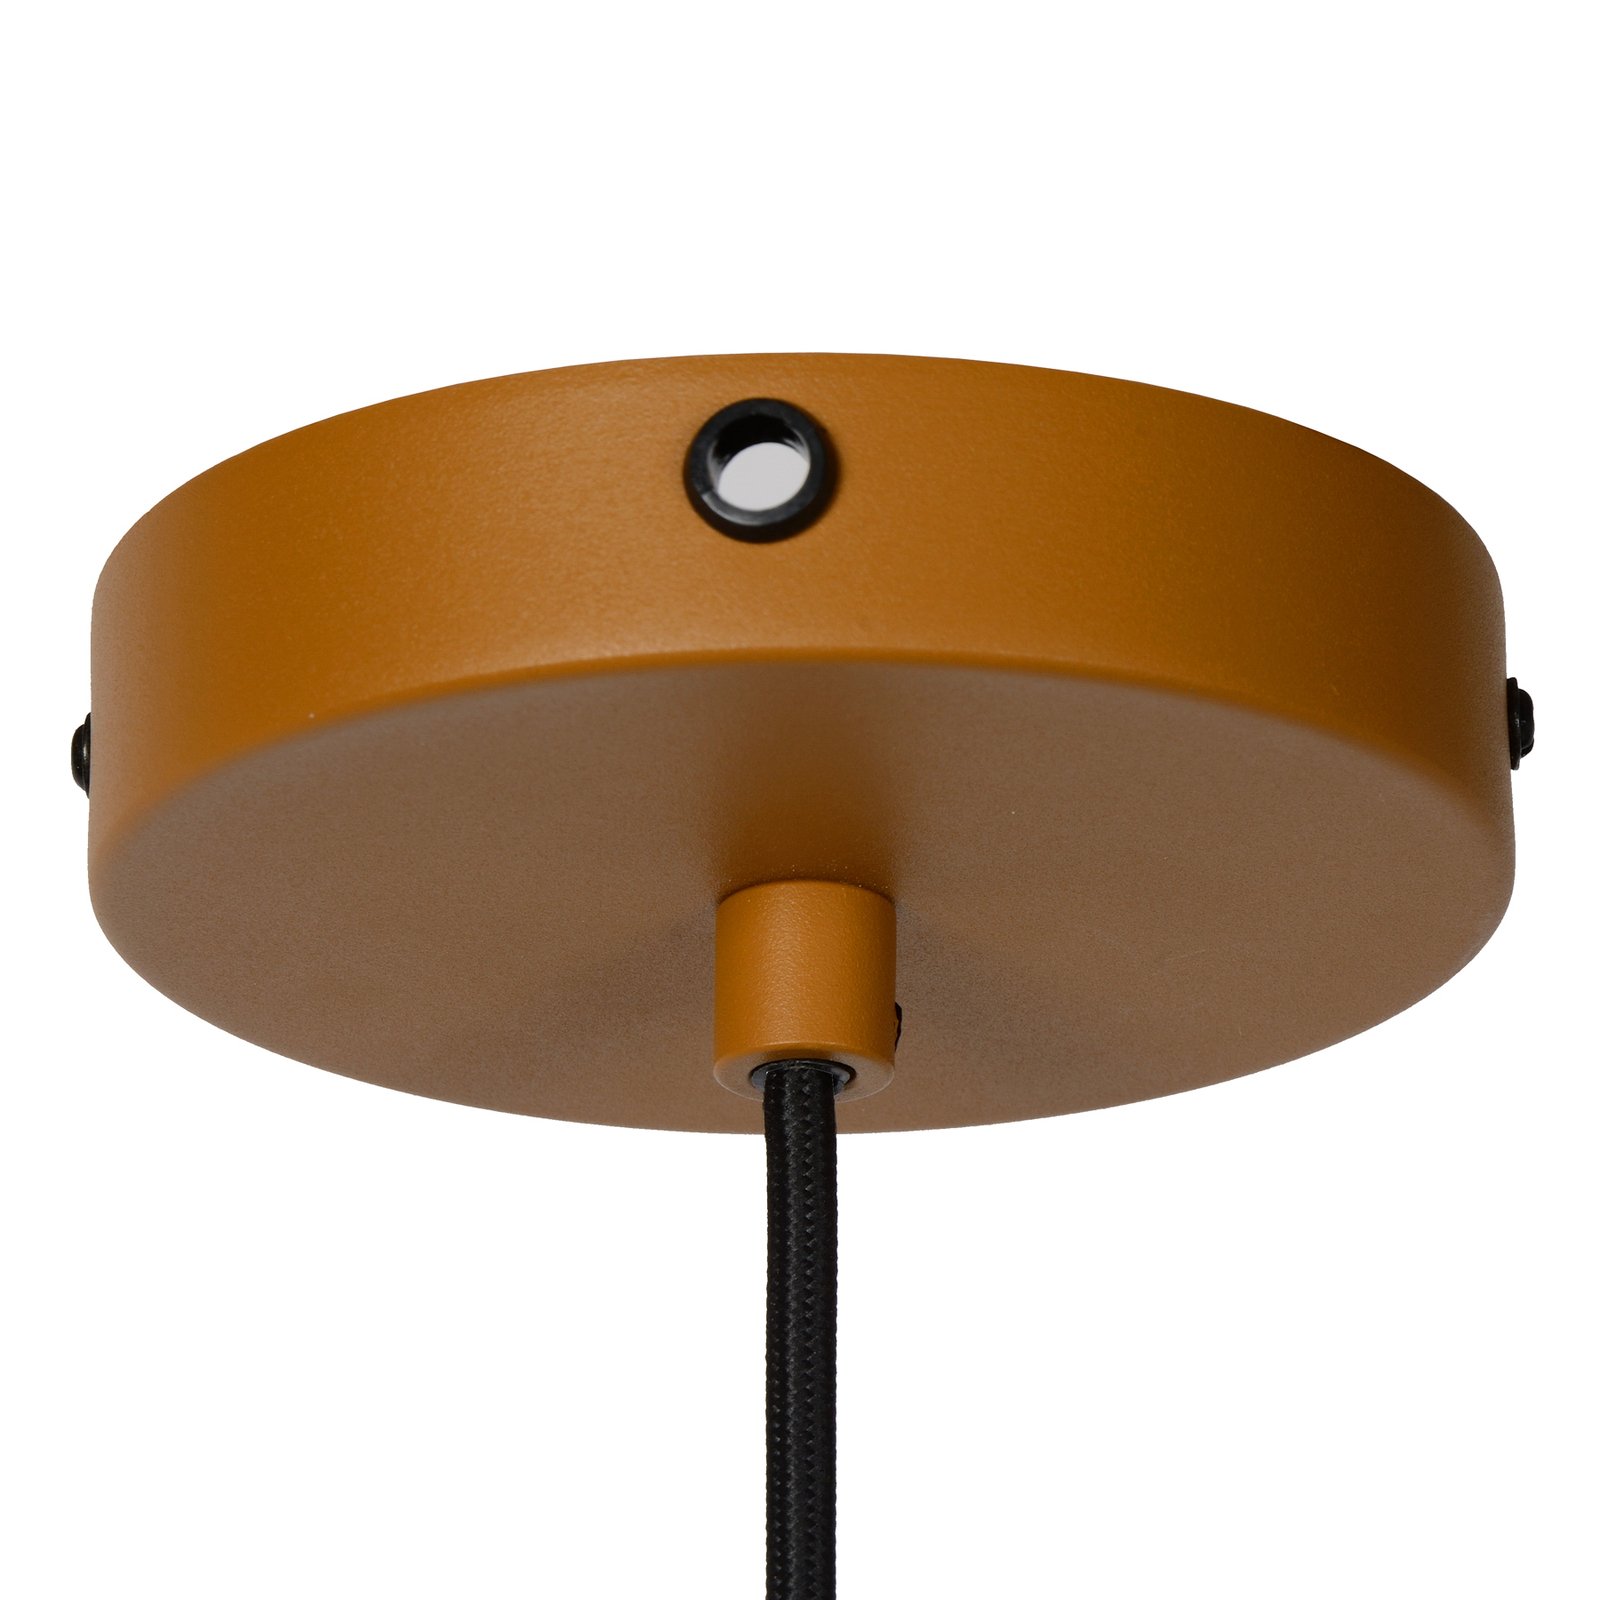 Siemon lampă suspendată din oțel, Ø 40 cm, ocru